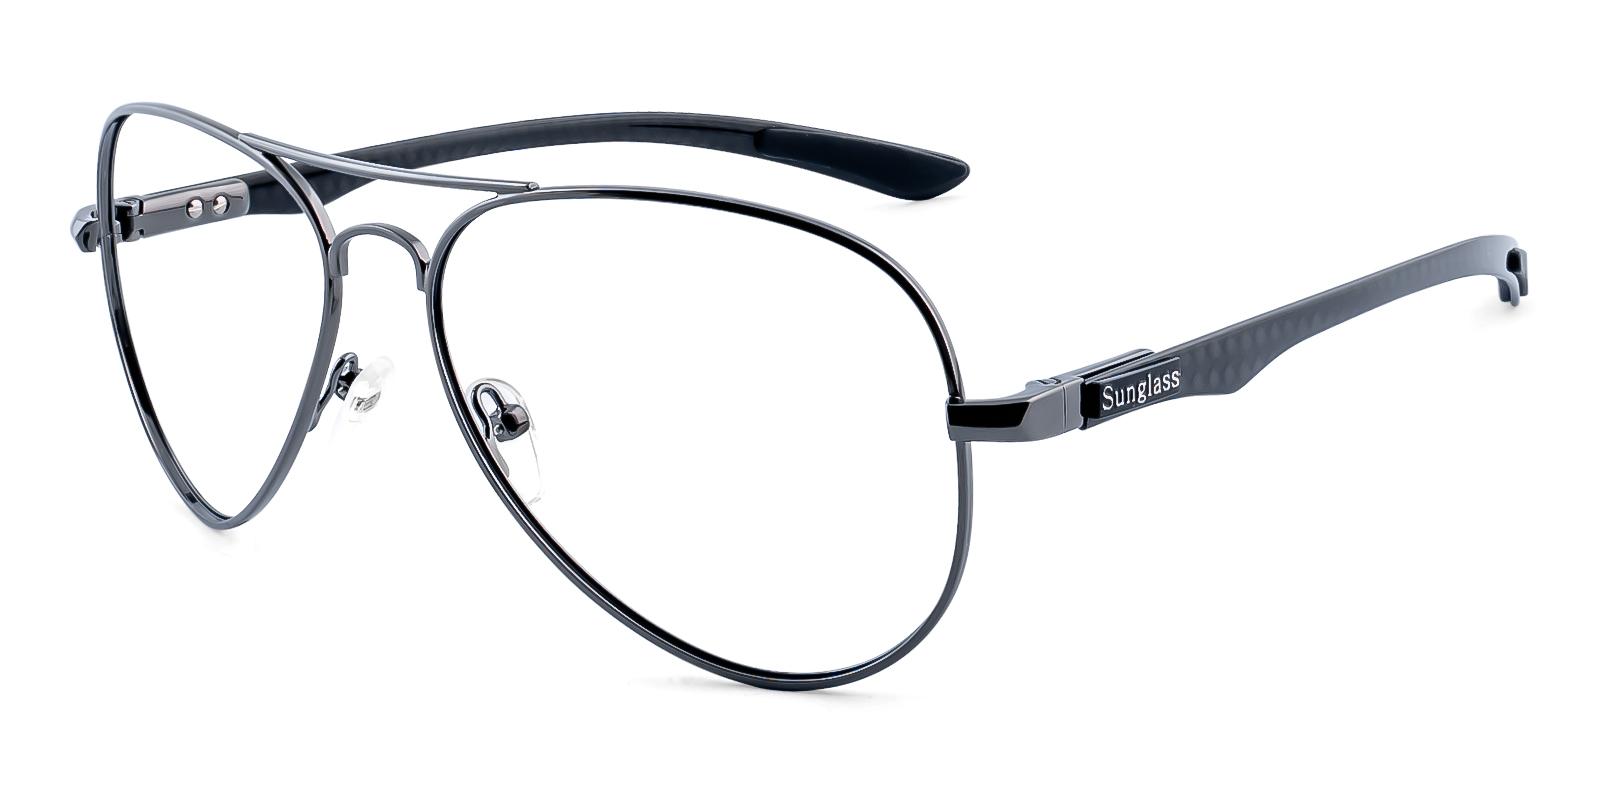 Phloeant Gun Metal Eyeglasses , NosePads Frames from ABBE Glasses